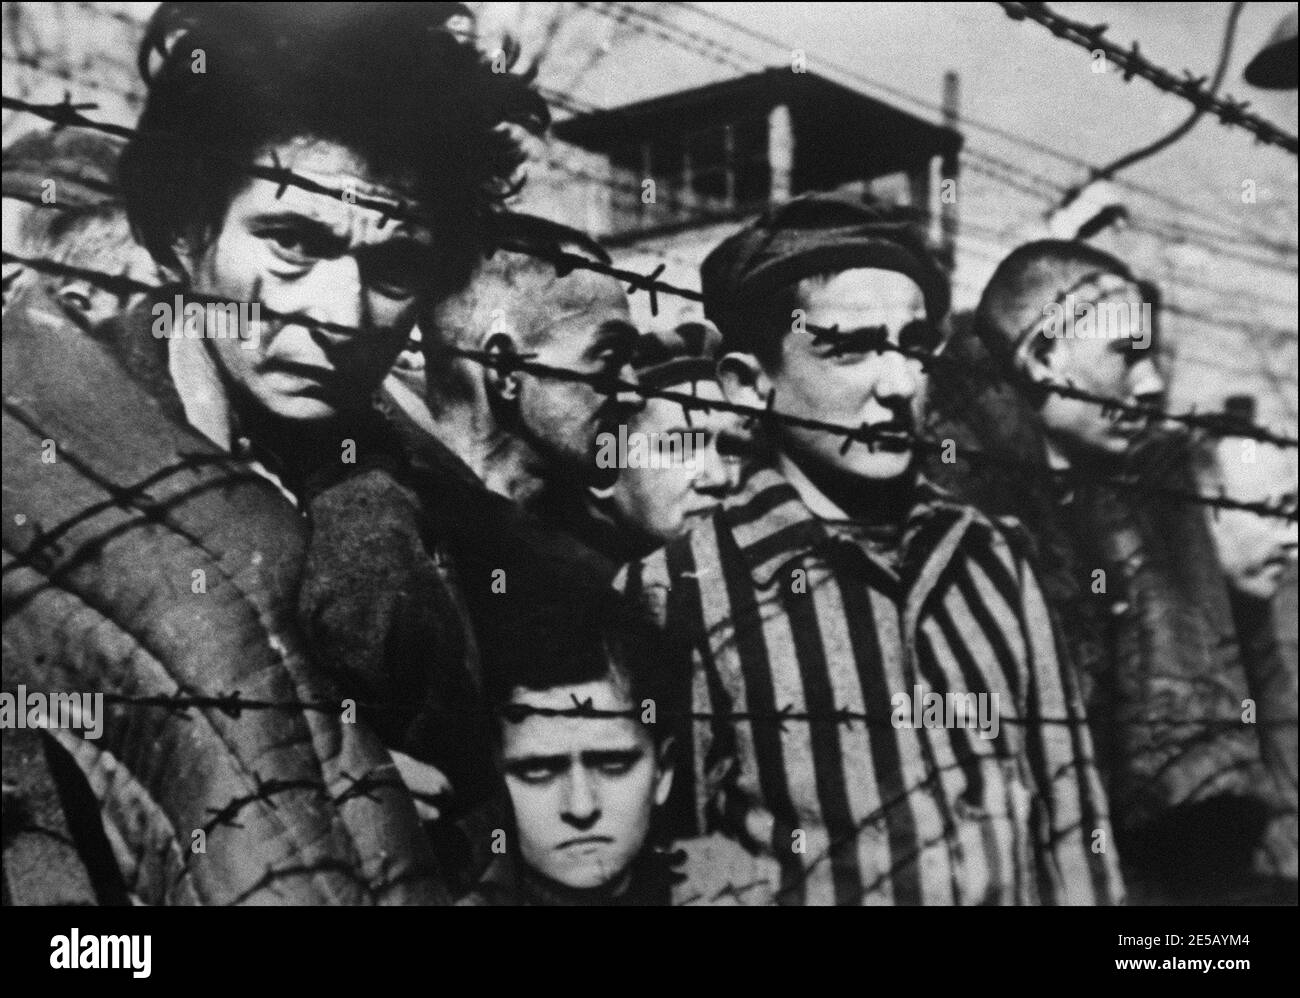 Une photo des détenus derrière des barbelés prise en 1945 lorsque le camp de concentration d'Auschwitz a été libéré en Pologne où des millions de déportés juifs ont été exterminés par des nazis pendant la Seconde Guerre mondiale Cette photo est un extrait du film soviétique "Auschwitz" du réalisateur soviétique Elizaveta Svilova (1945) Banque D'Images